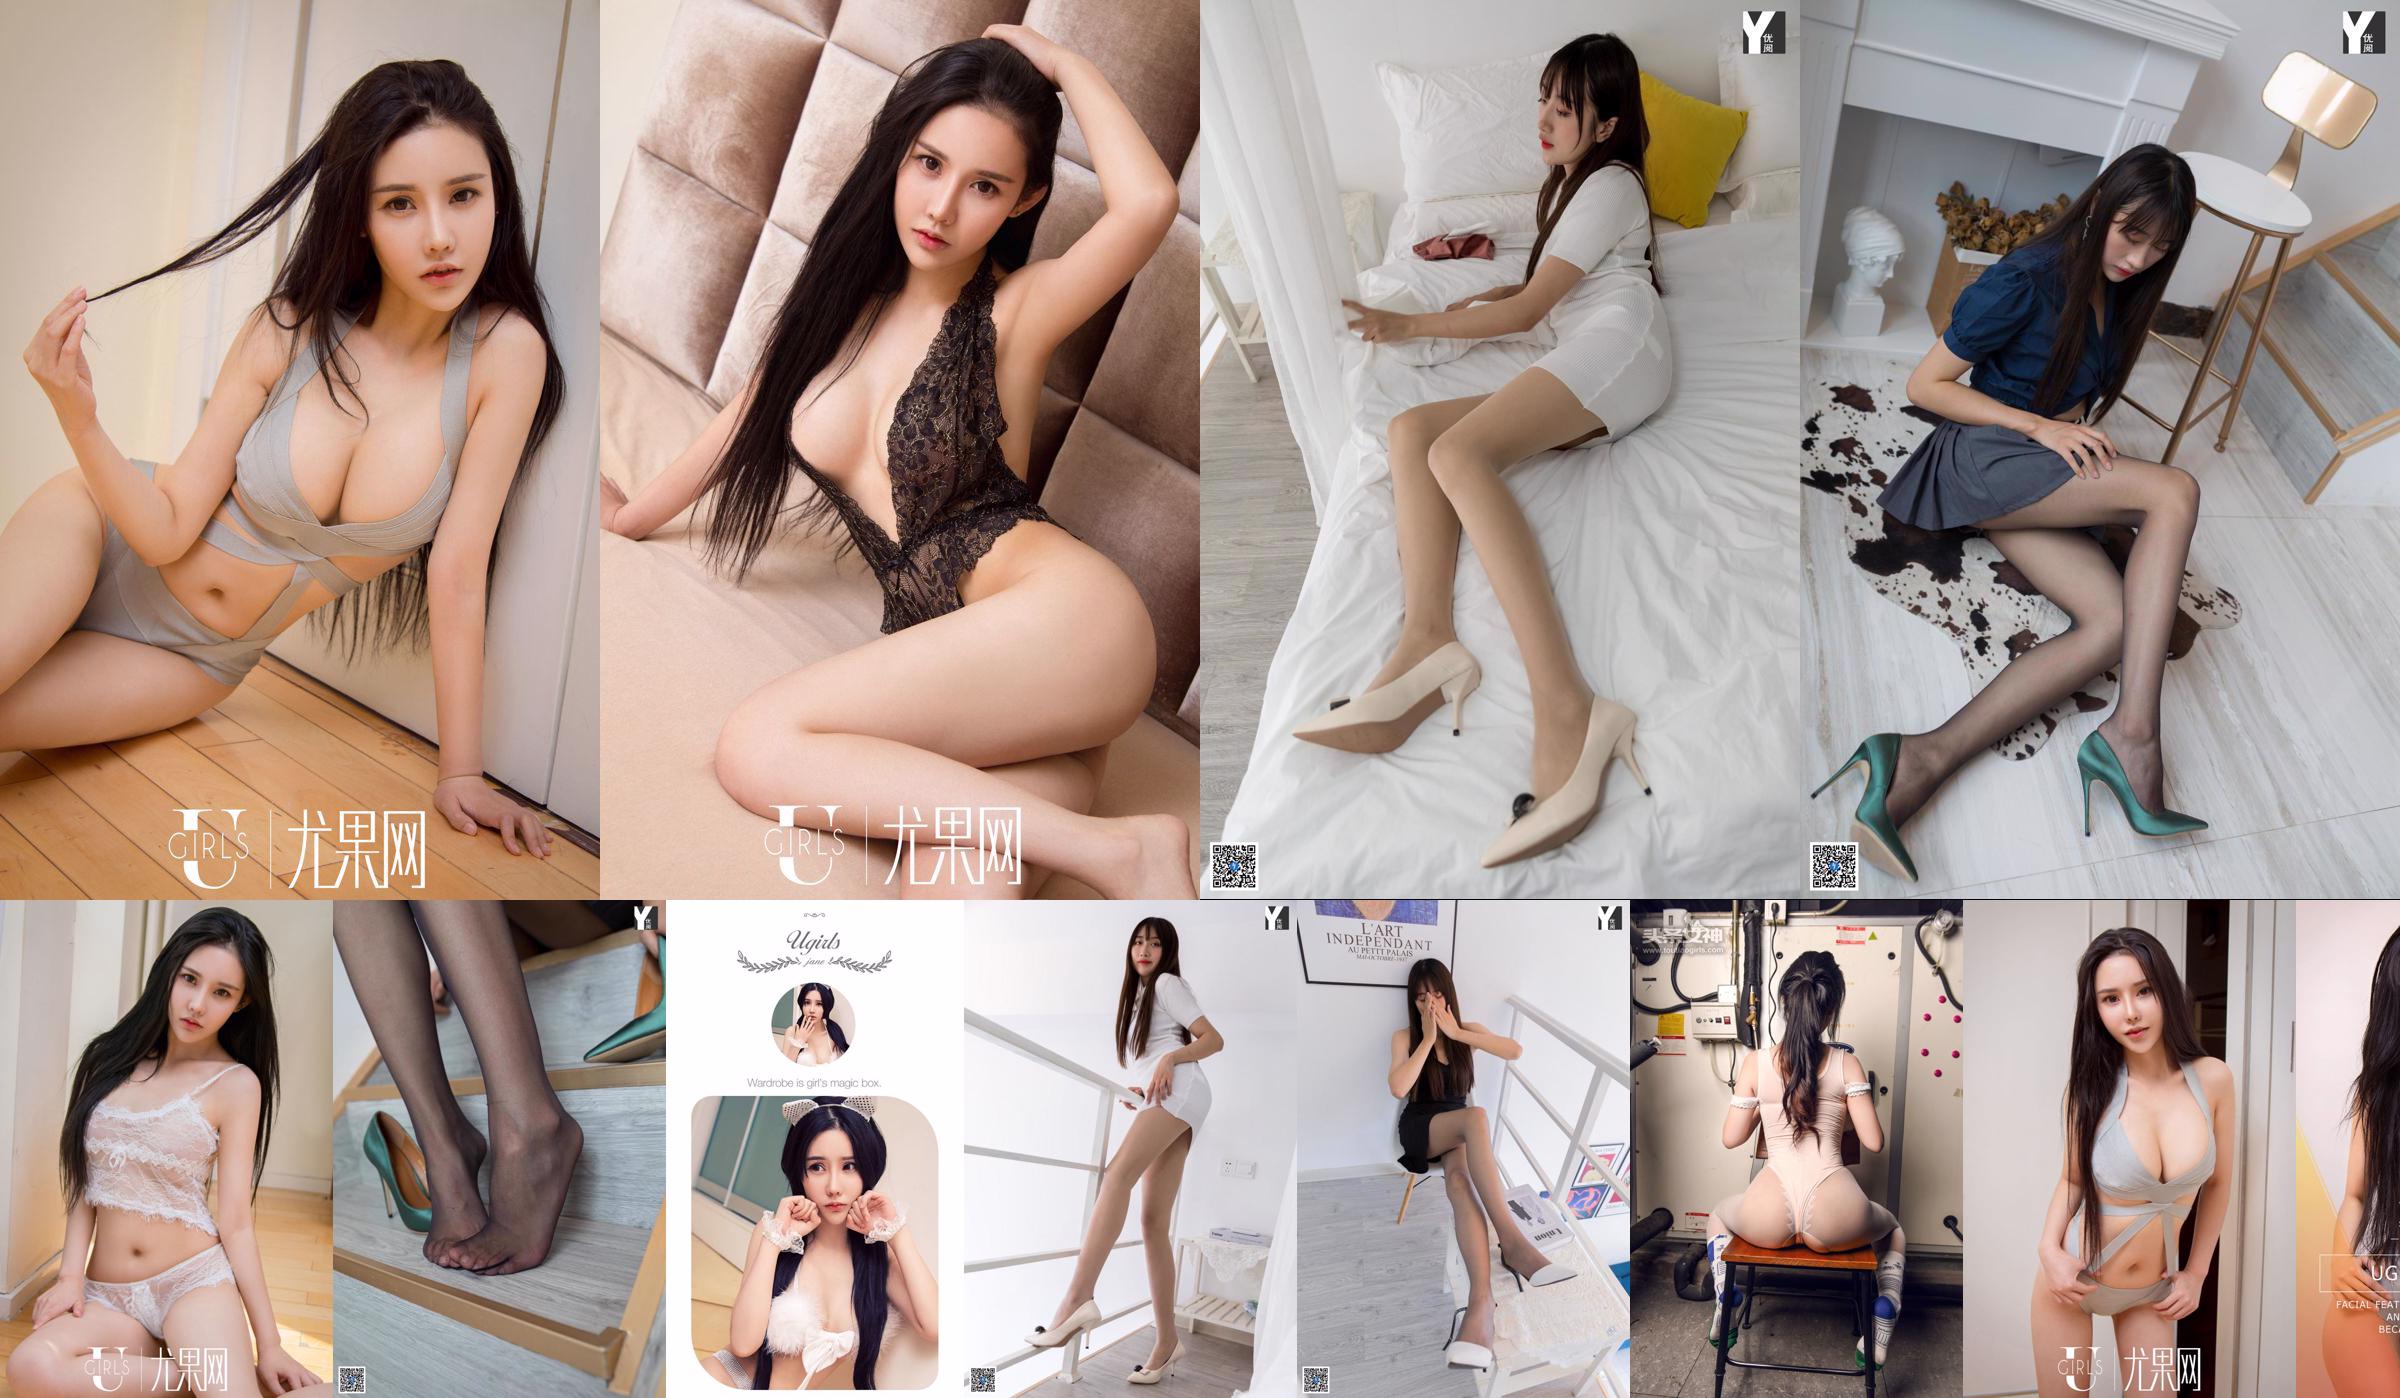 [IESS异思趣向] Model: Xia Xia "Long Black Hair and Long Legs" Beautiful Legs No.218c0e Page 16